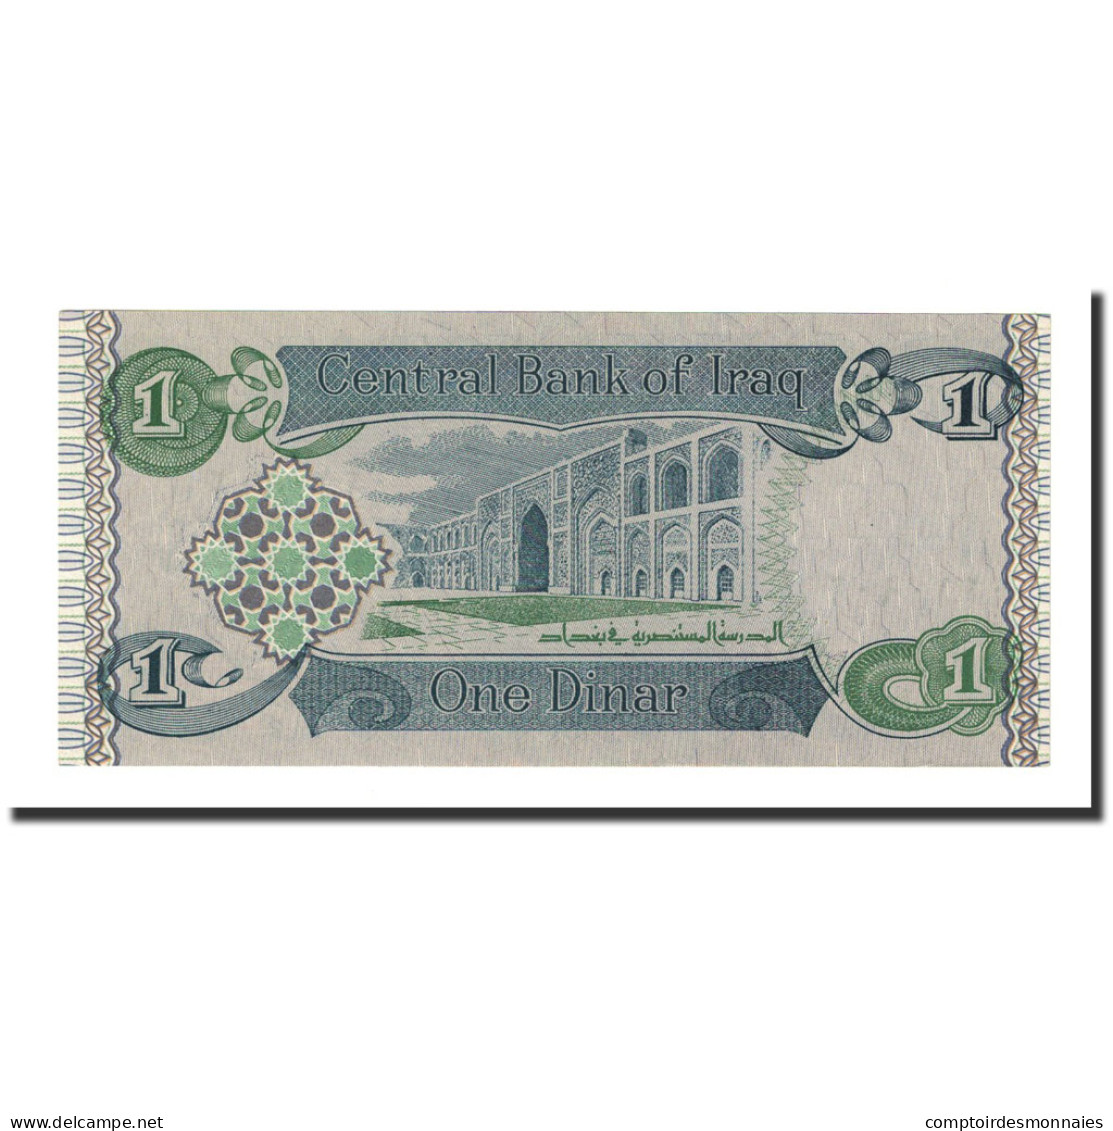 Billet, Iraq, 1 Dinar, 1992, KM:79, NEUF - Iraq